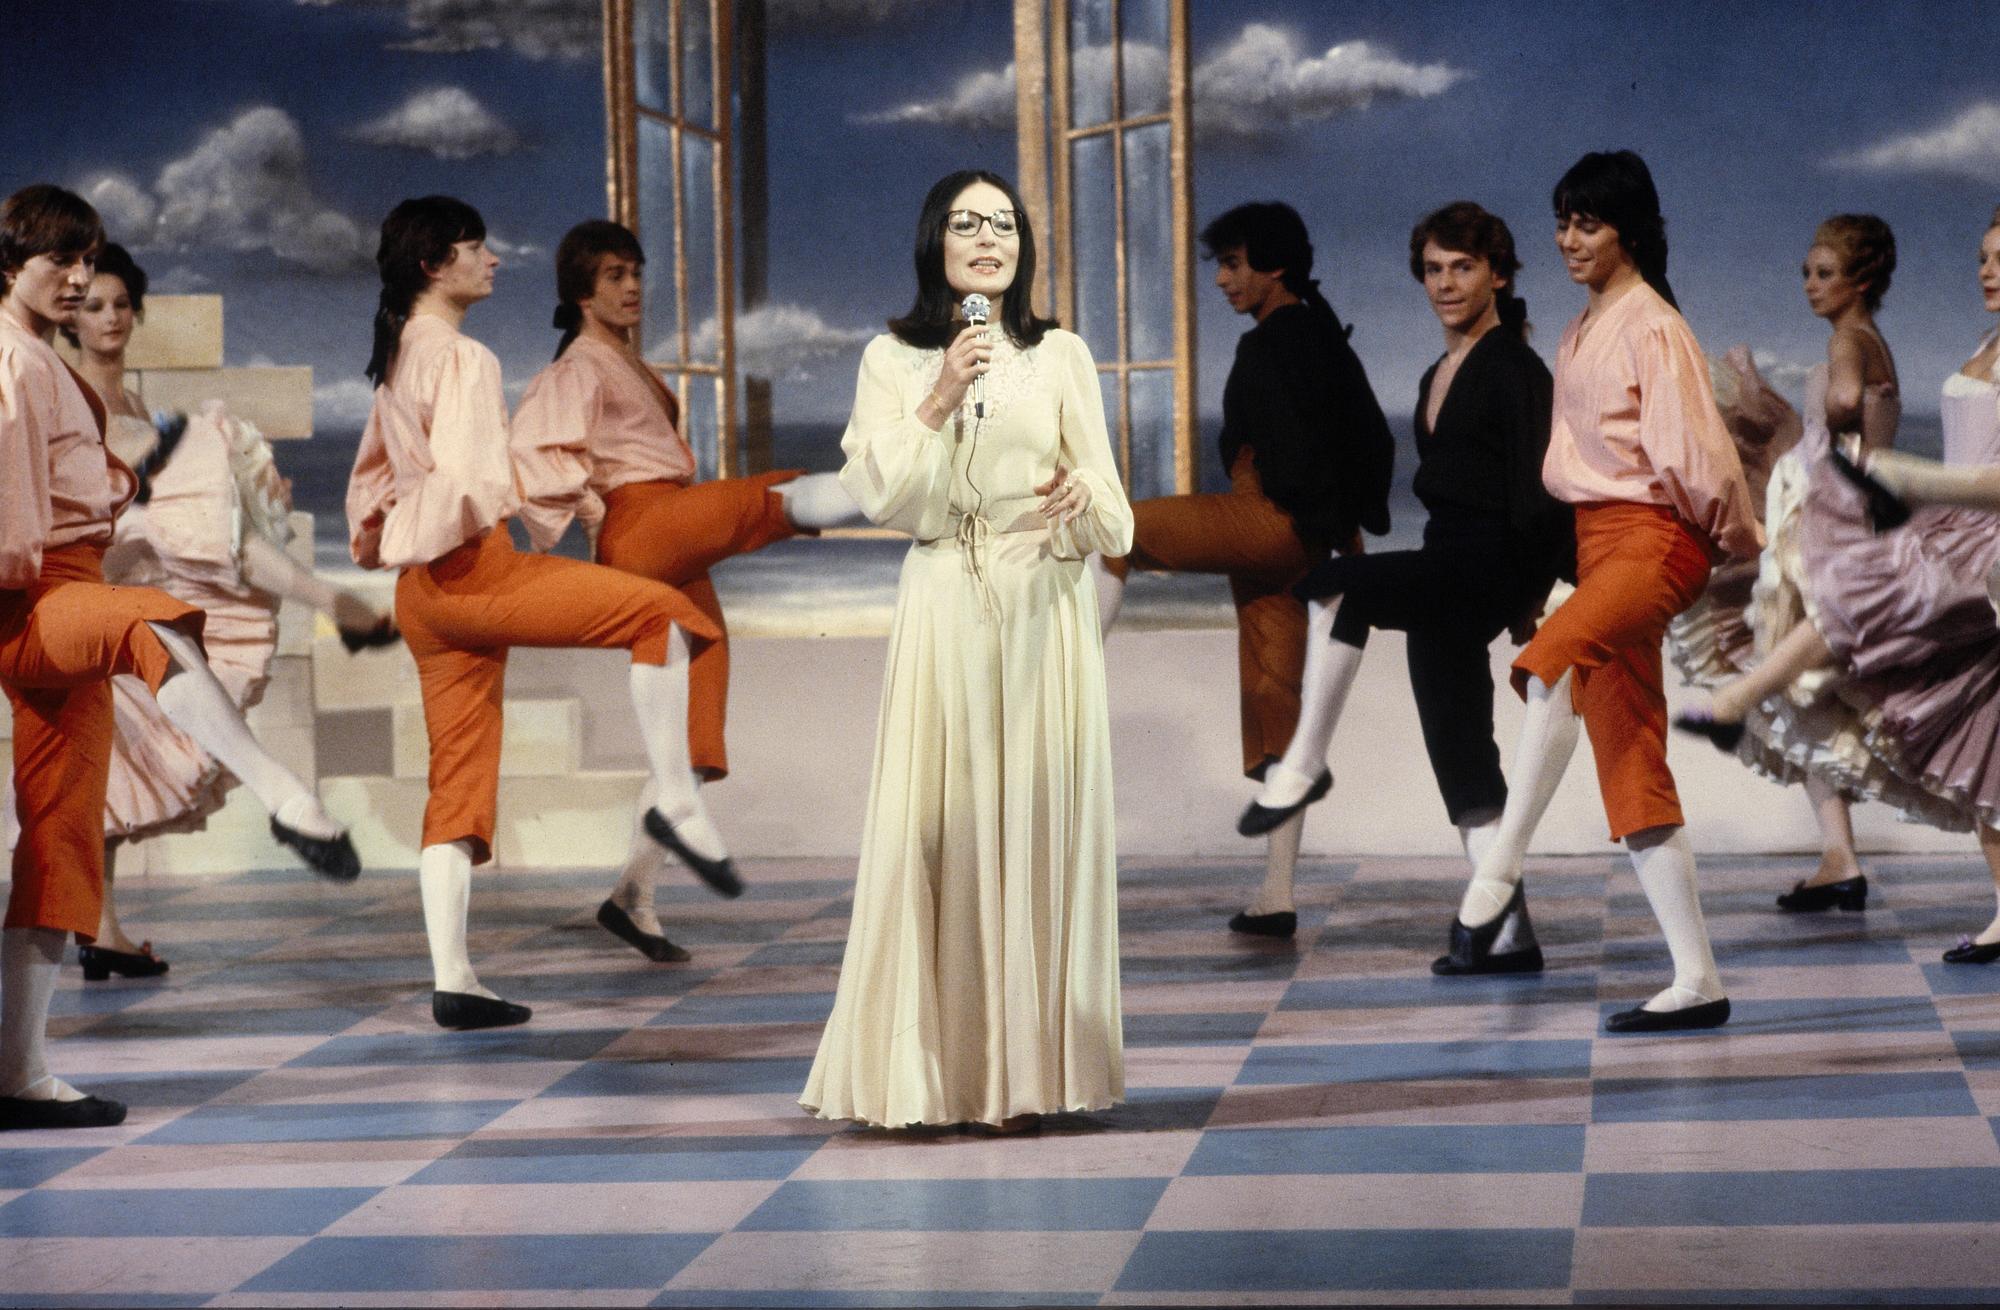 La chanteuse Nana Mouskouri sur le plateau de l'émission TV française de variété "Numéro un", le 21 décembre 1978. [AFP - Alain Liennard / Ina]